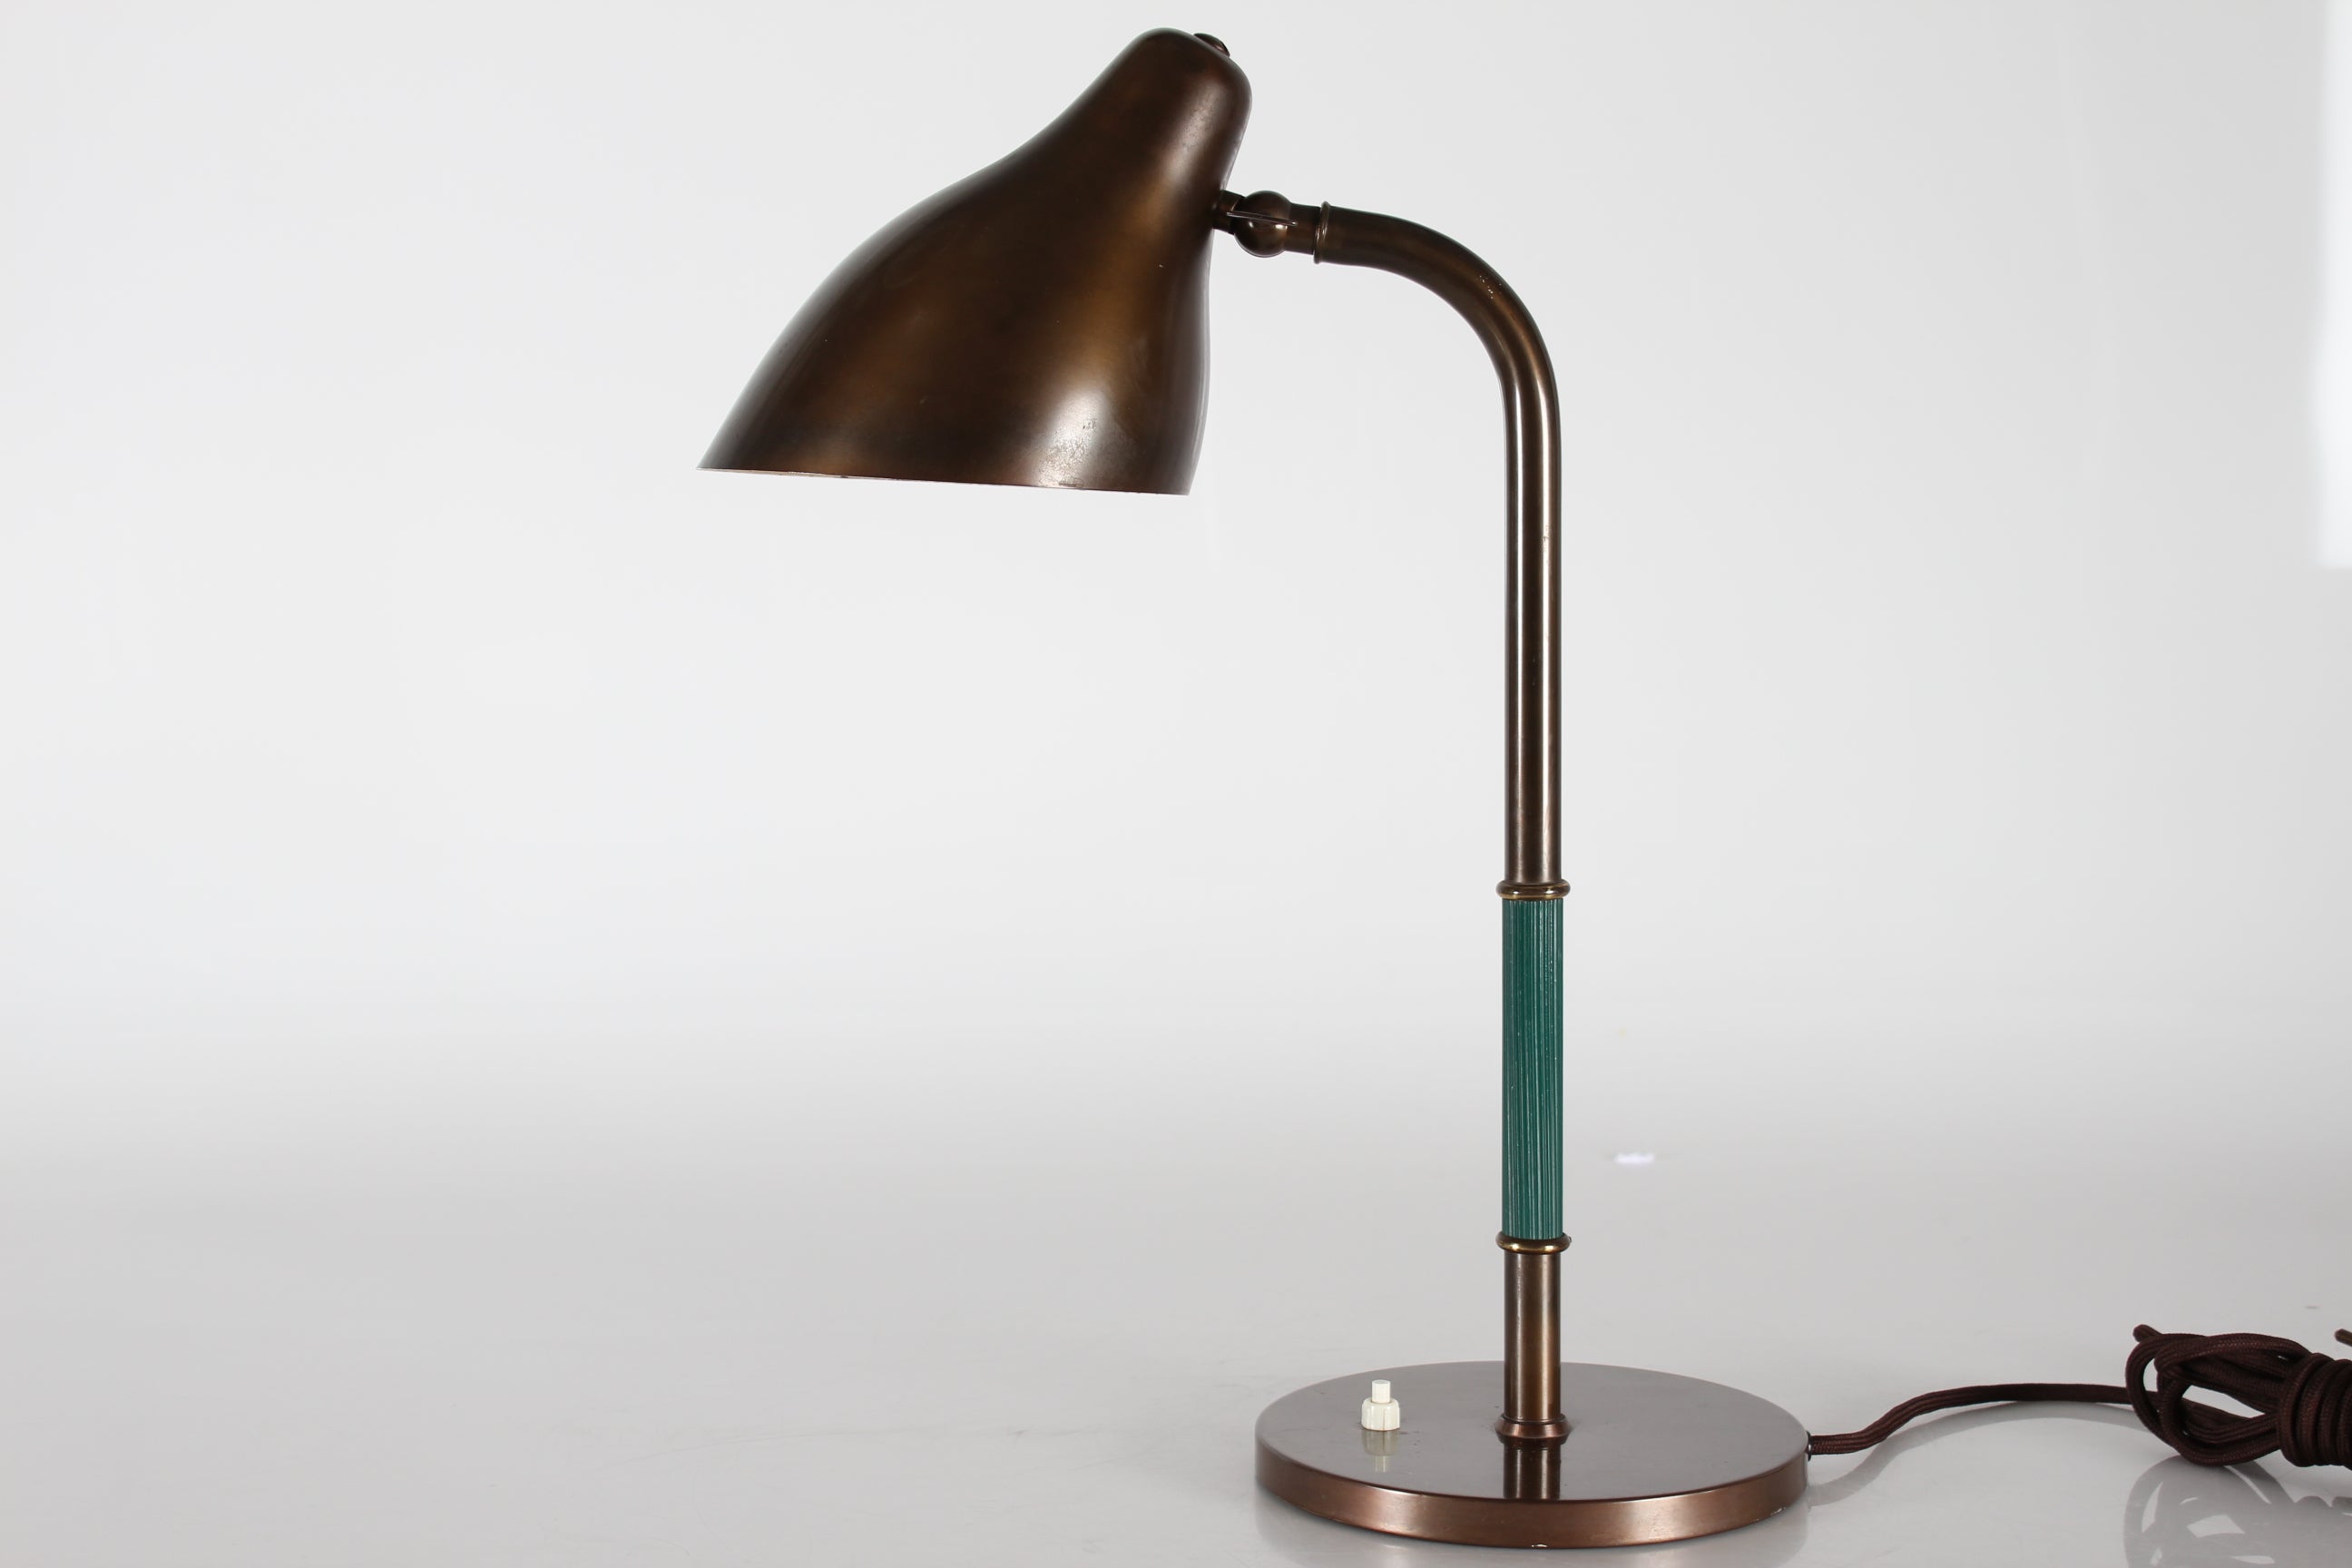 Lampe de bureau vintage modèle B 187 par l'architecte danois Vilhelm Lauritzen (1894-1984)  fabriqué par Lyfa dans les années 1940.

Vilhelm Lauritzen a été l'un des plus grands designers danois du XXe siècle.
Fonctionnaliste, il a conçu des